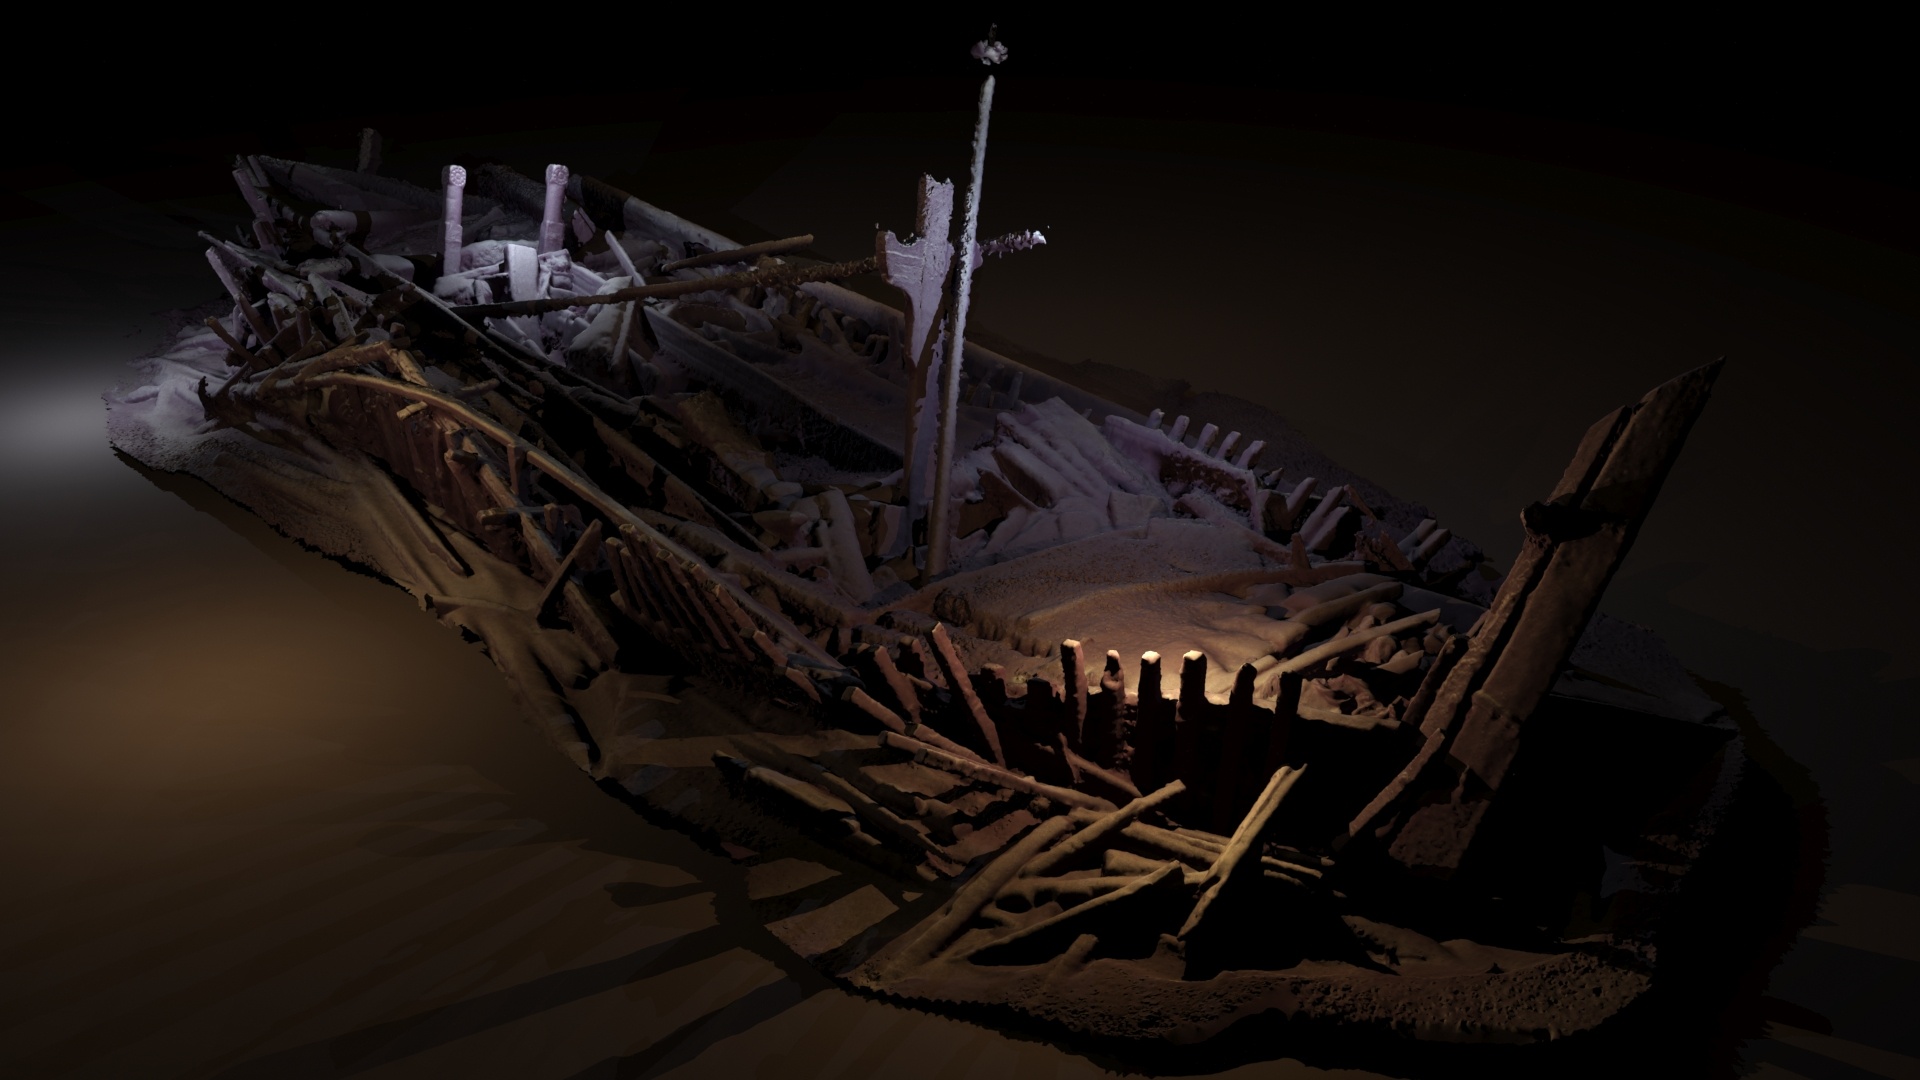 Një anije e mbytur nga periudha osmane e zbuluar në 300 metra ujë. Shumë prej drurit të saj janë të gdhendura. Ky imazh është një model fotogrametrik i krijuar nga fotografitë e marra nga kamerat në ROV, të paraqitura me burime drite (modeli Rodrigo Pacheco-Ruiz).